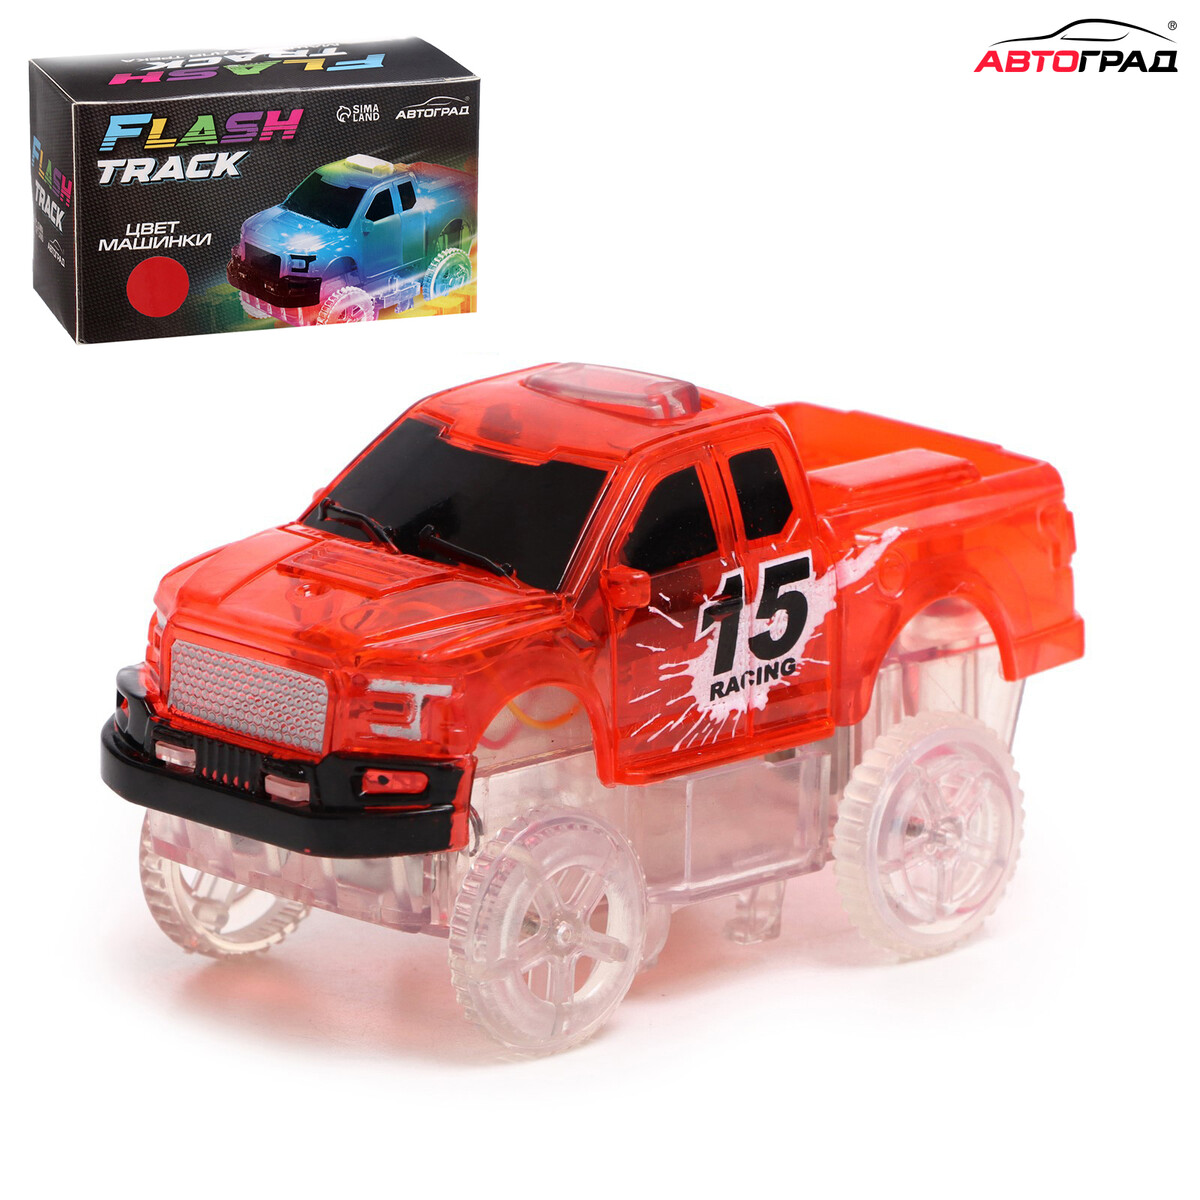 Машинка для гибкого трека flash track, с зацепами для петли, цвет красный радиоуправляемая машинка wl toys monster truck l313 красный